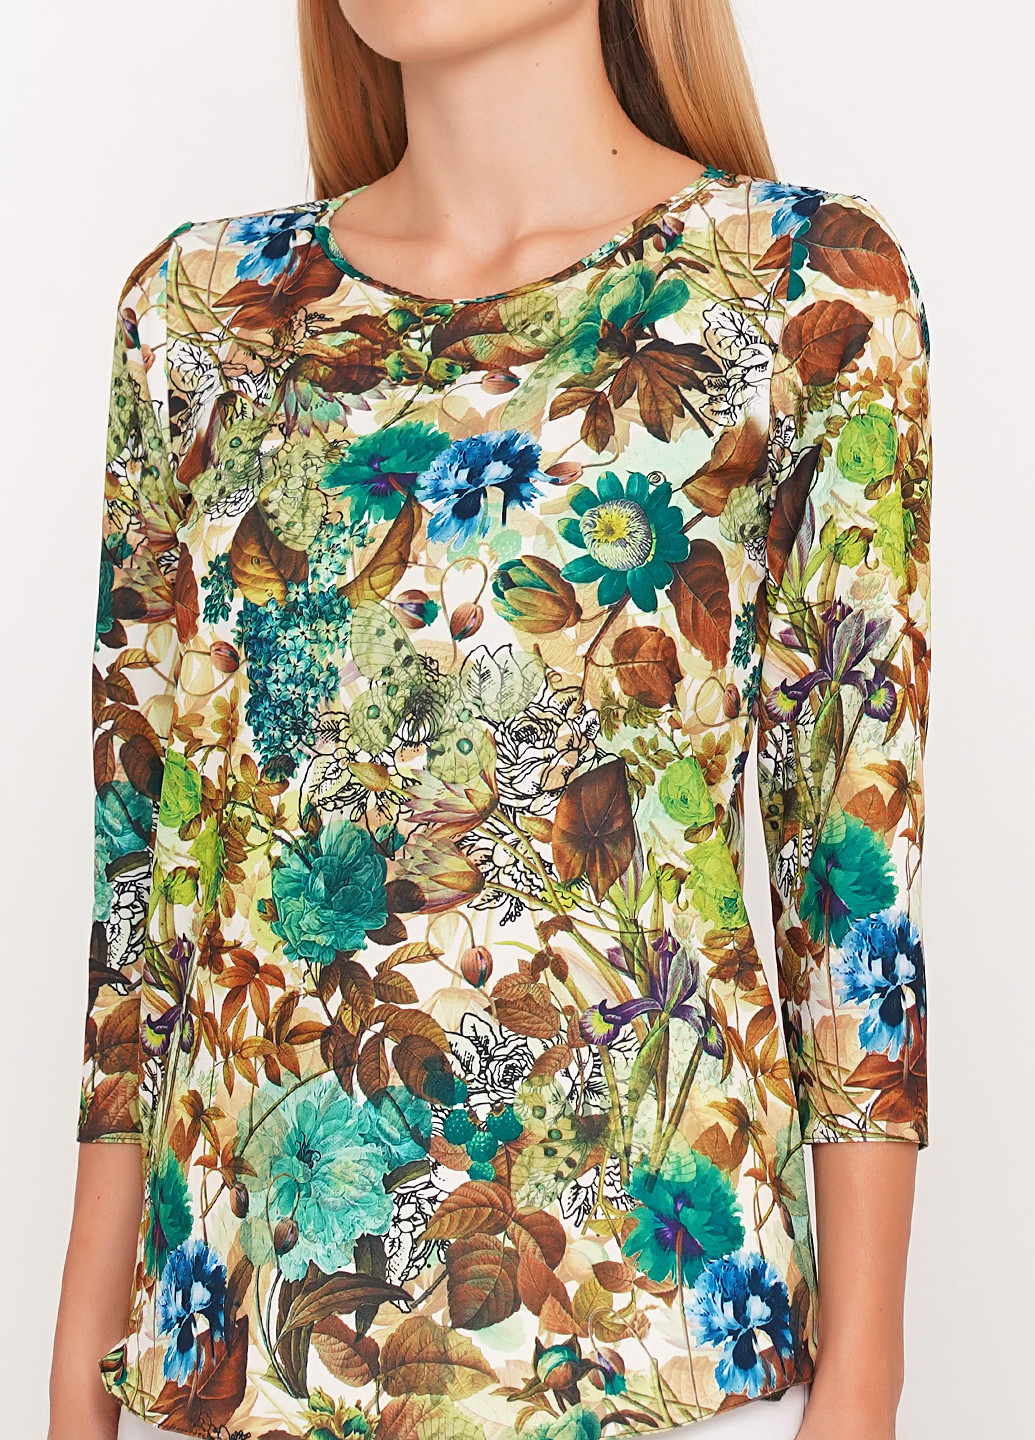 Комбинированная демисезонная блуза Anastasimo